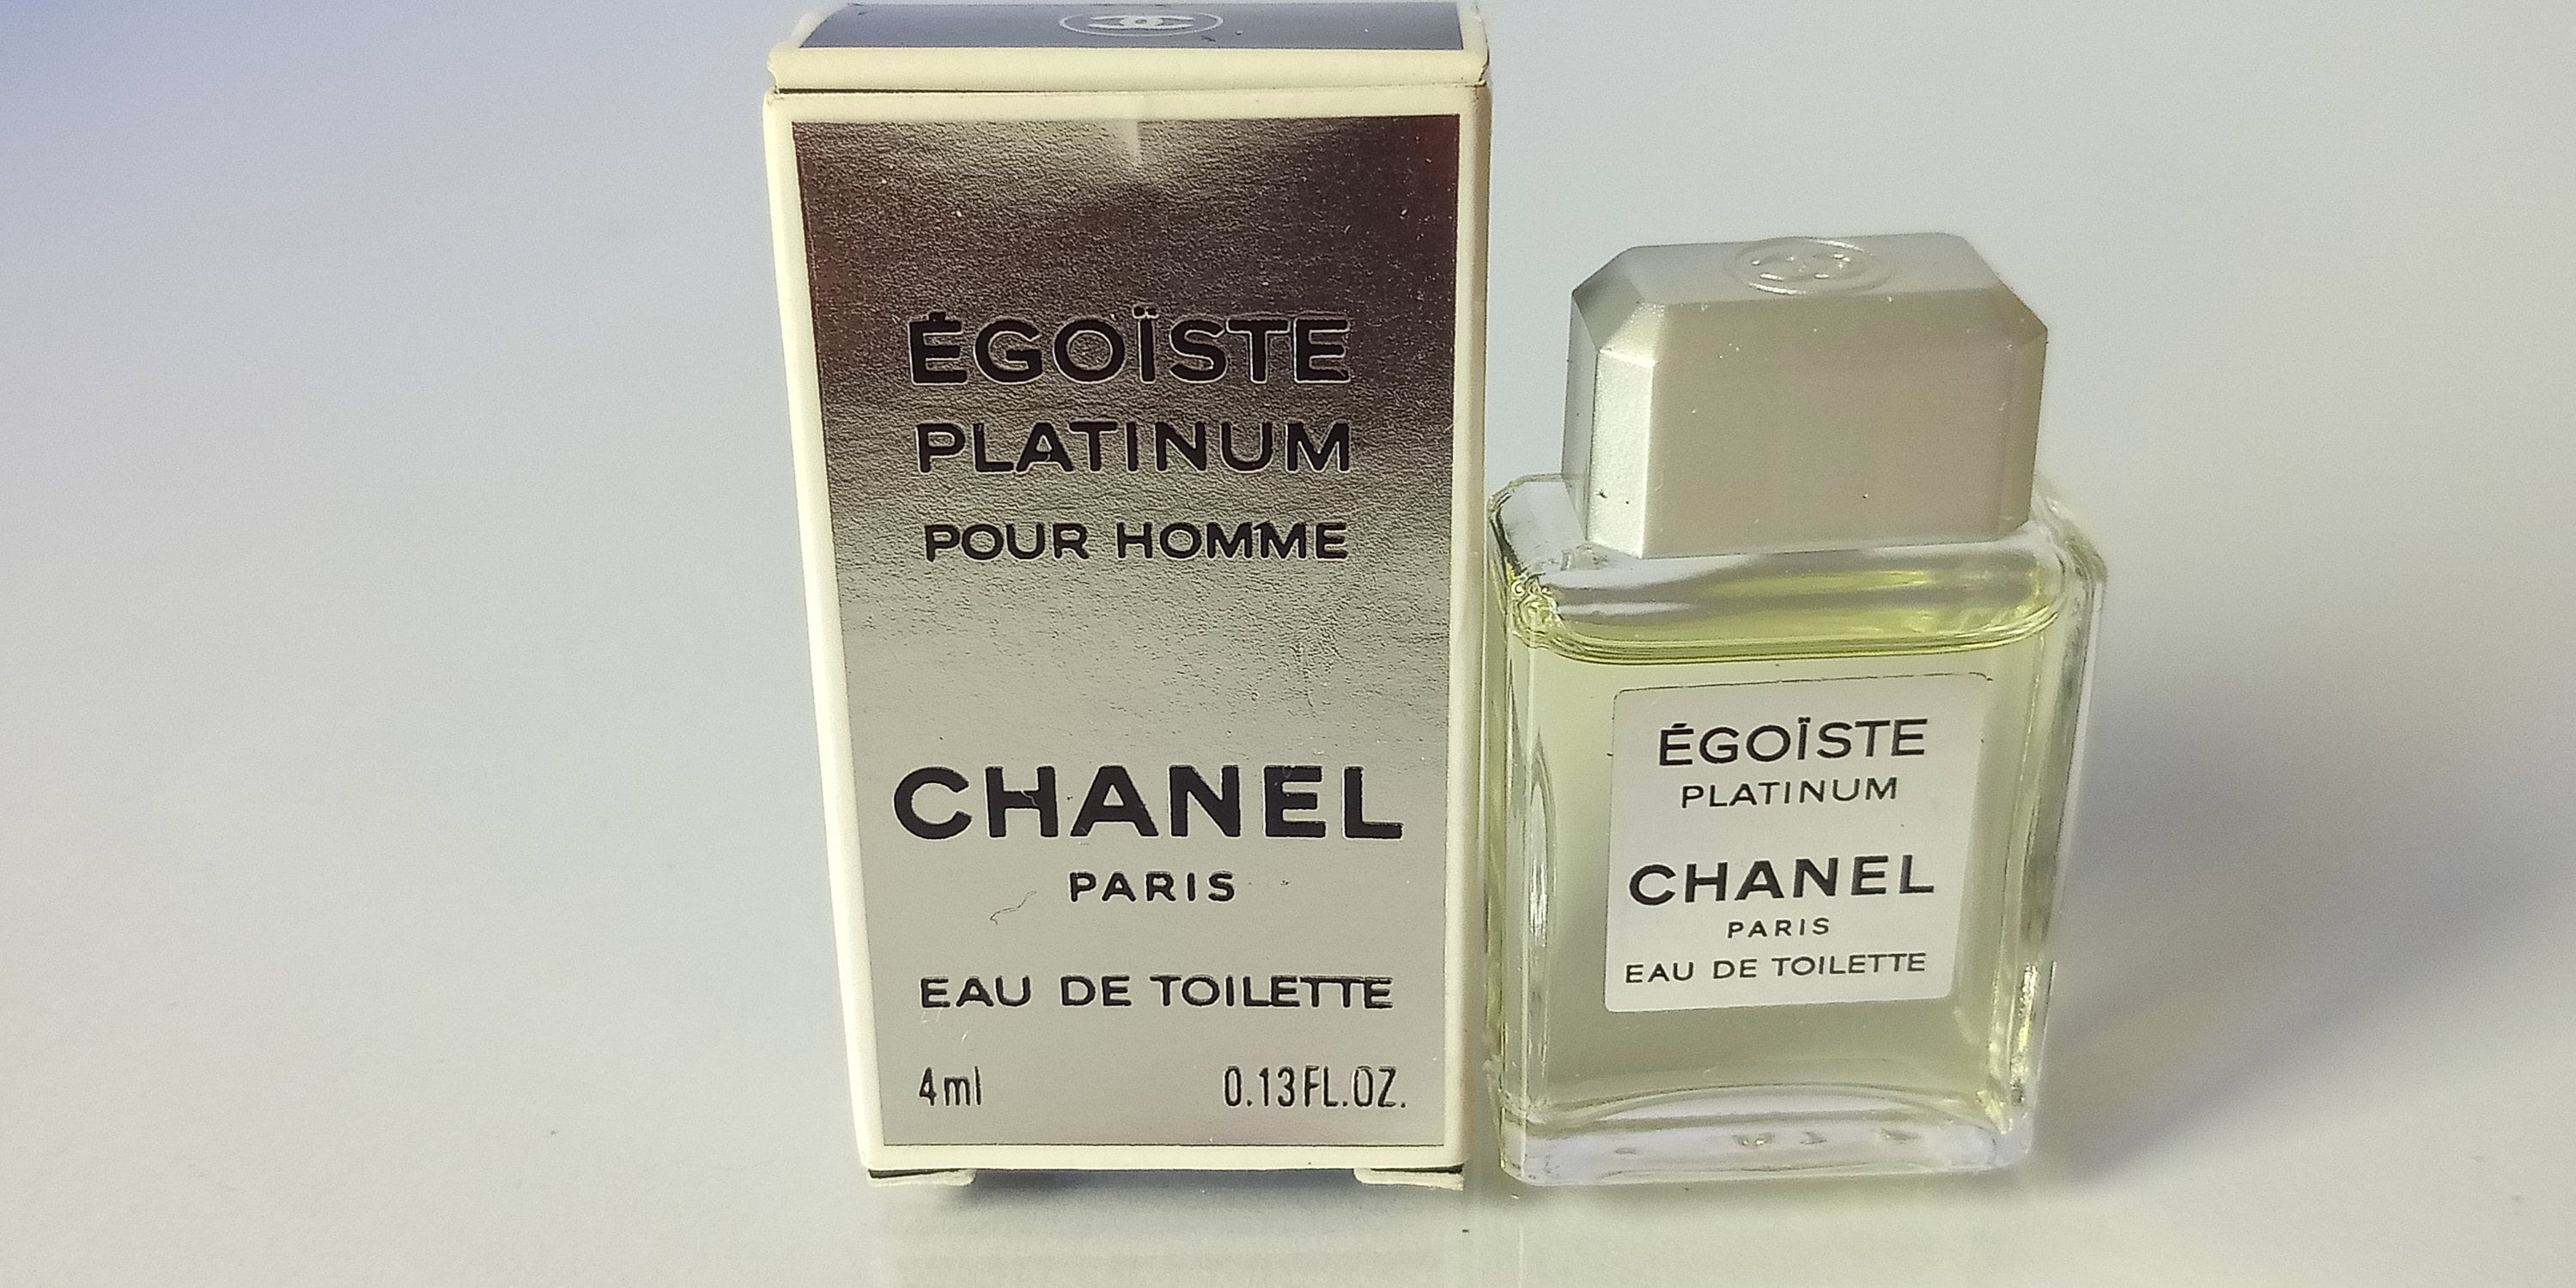 Egoiste Platinum Chanel 1993 Pour Homme Eau De Toilette 